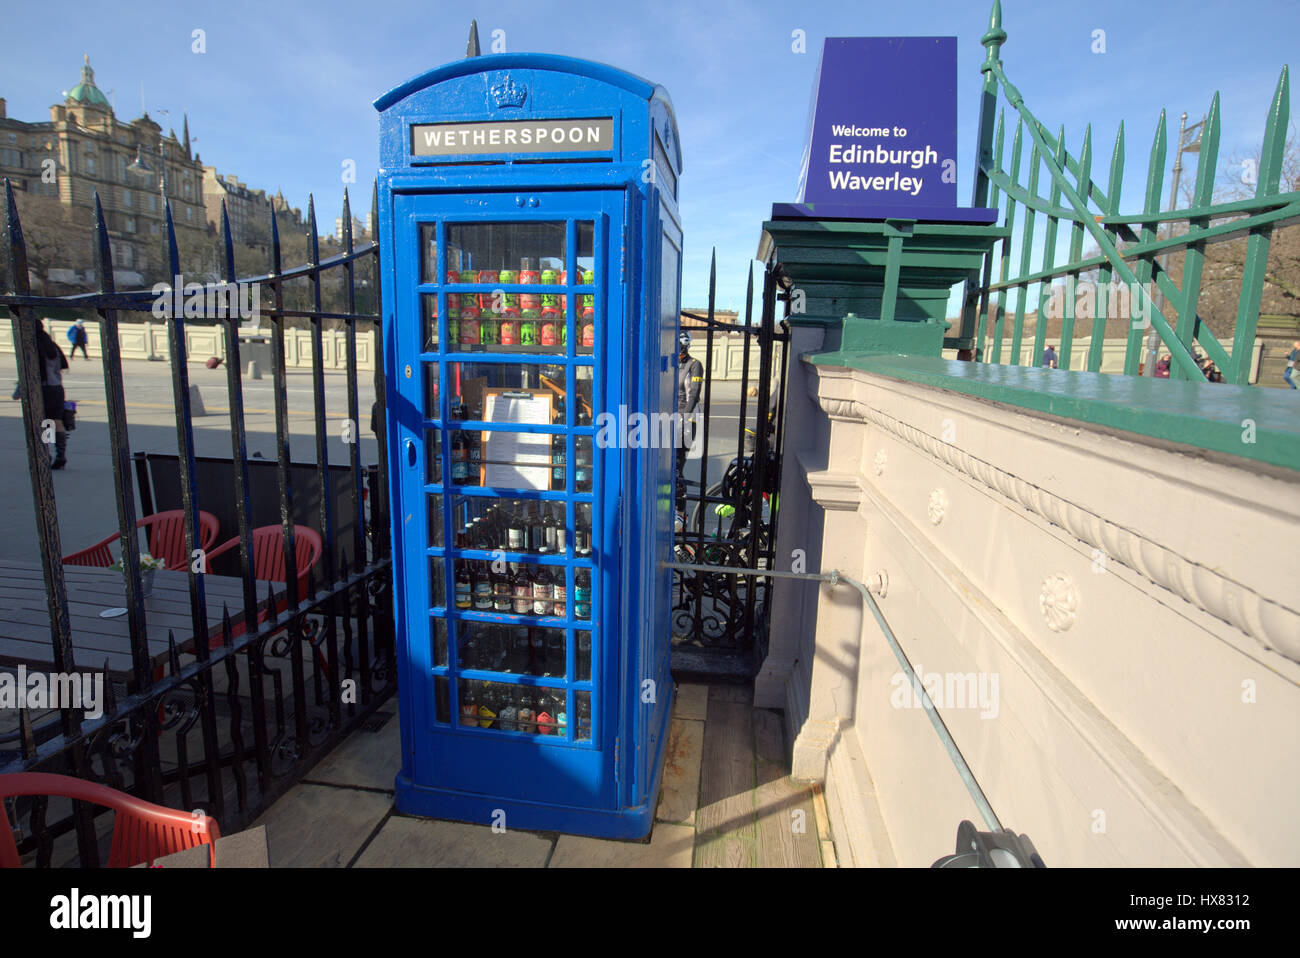 Cuadro teléfono azul convierten a nevera en el pub patio, la estación de tren de Waverley en Edimburgo Wetherspoons Foto de stock